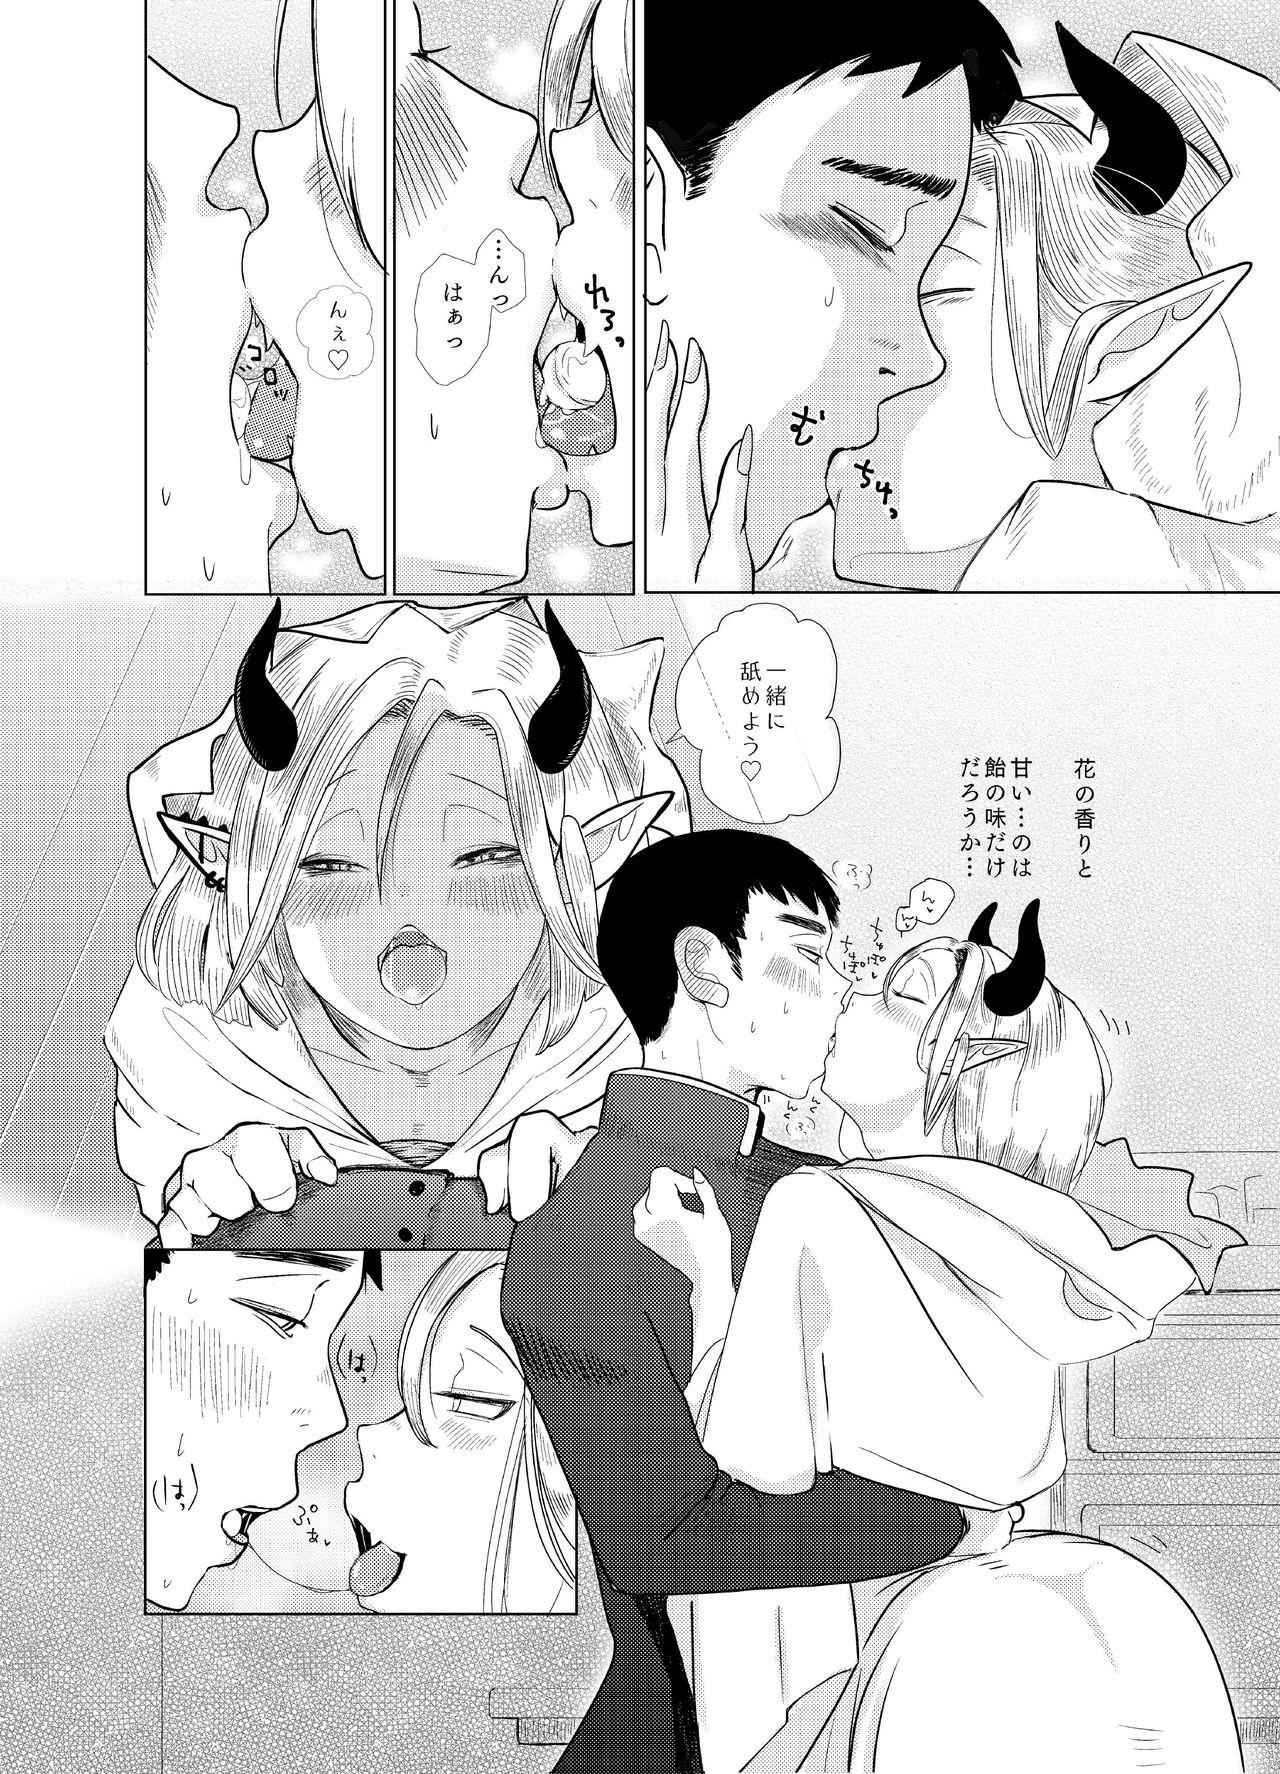 Tan Kami-sama Yurushite kureru yo ne? #2 Busty - Page 8